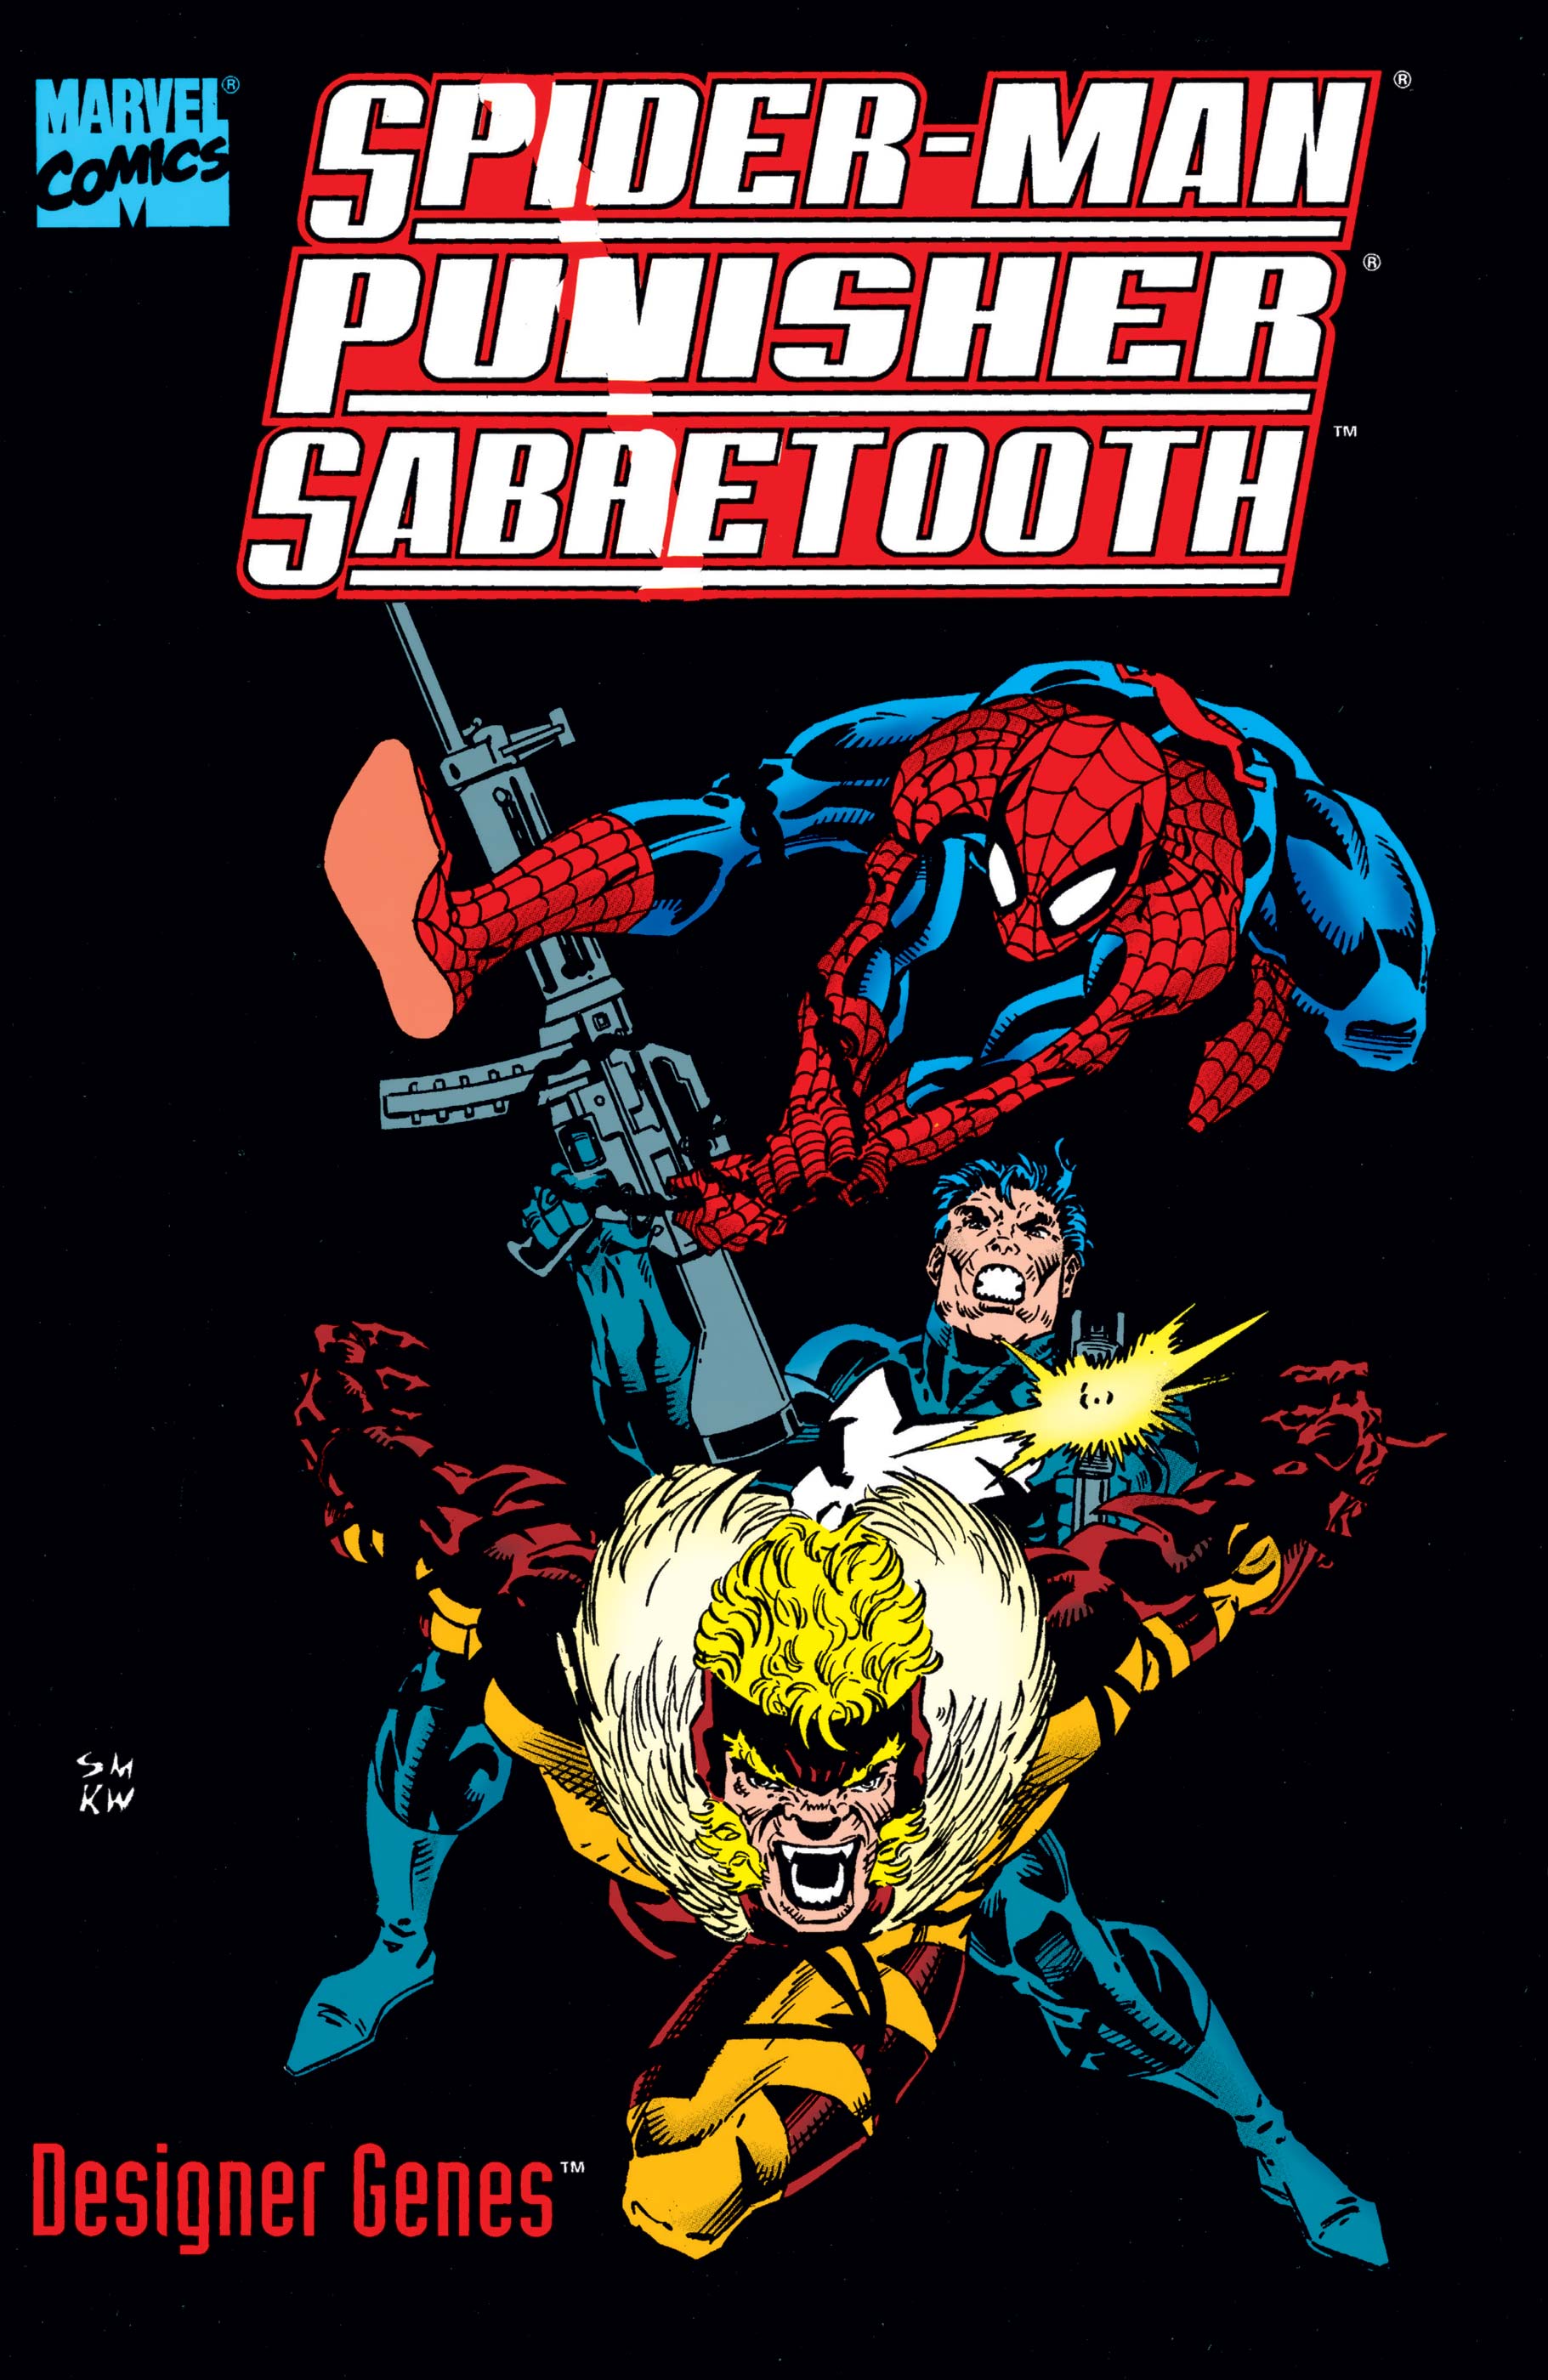 Spider-Man/Punisher/Sabretooth: Designer Genes (Trade Paperback)